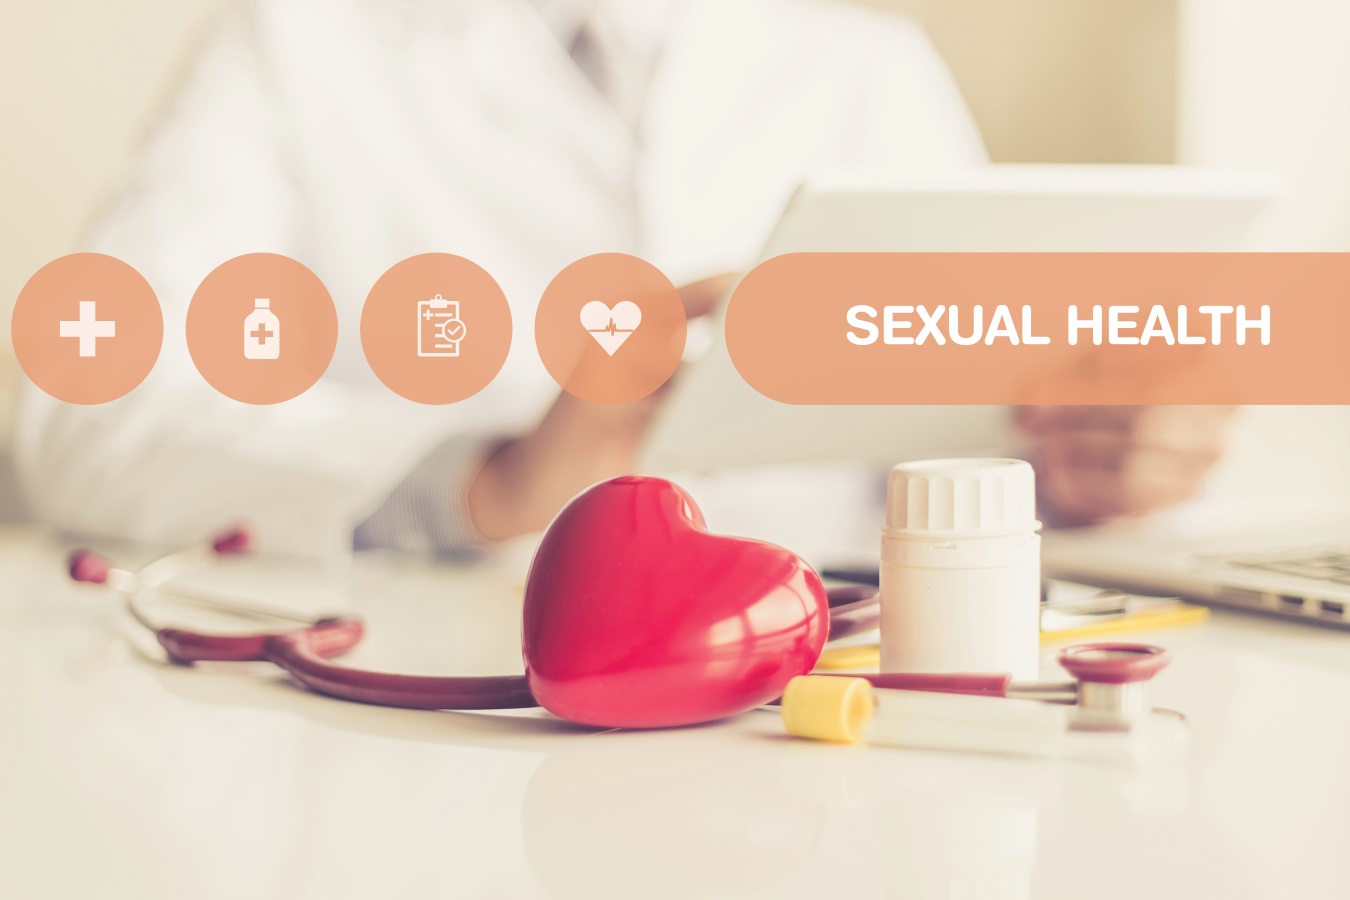 Tratamente pentru impotenta masculina: medicamente, remedii naturale si leacuri • Ghid Sex